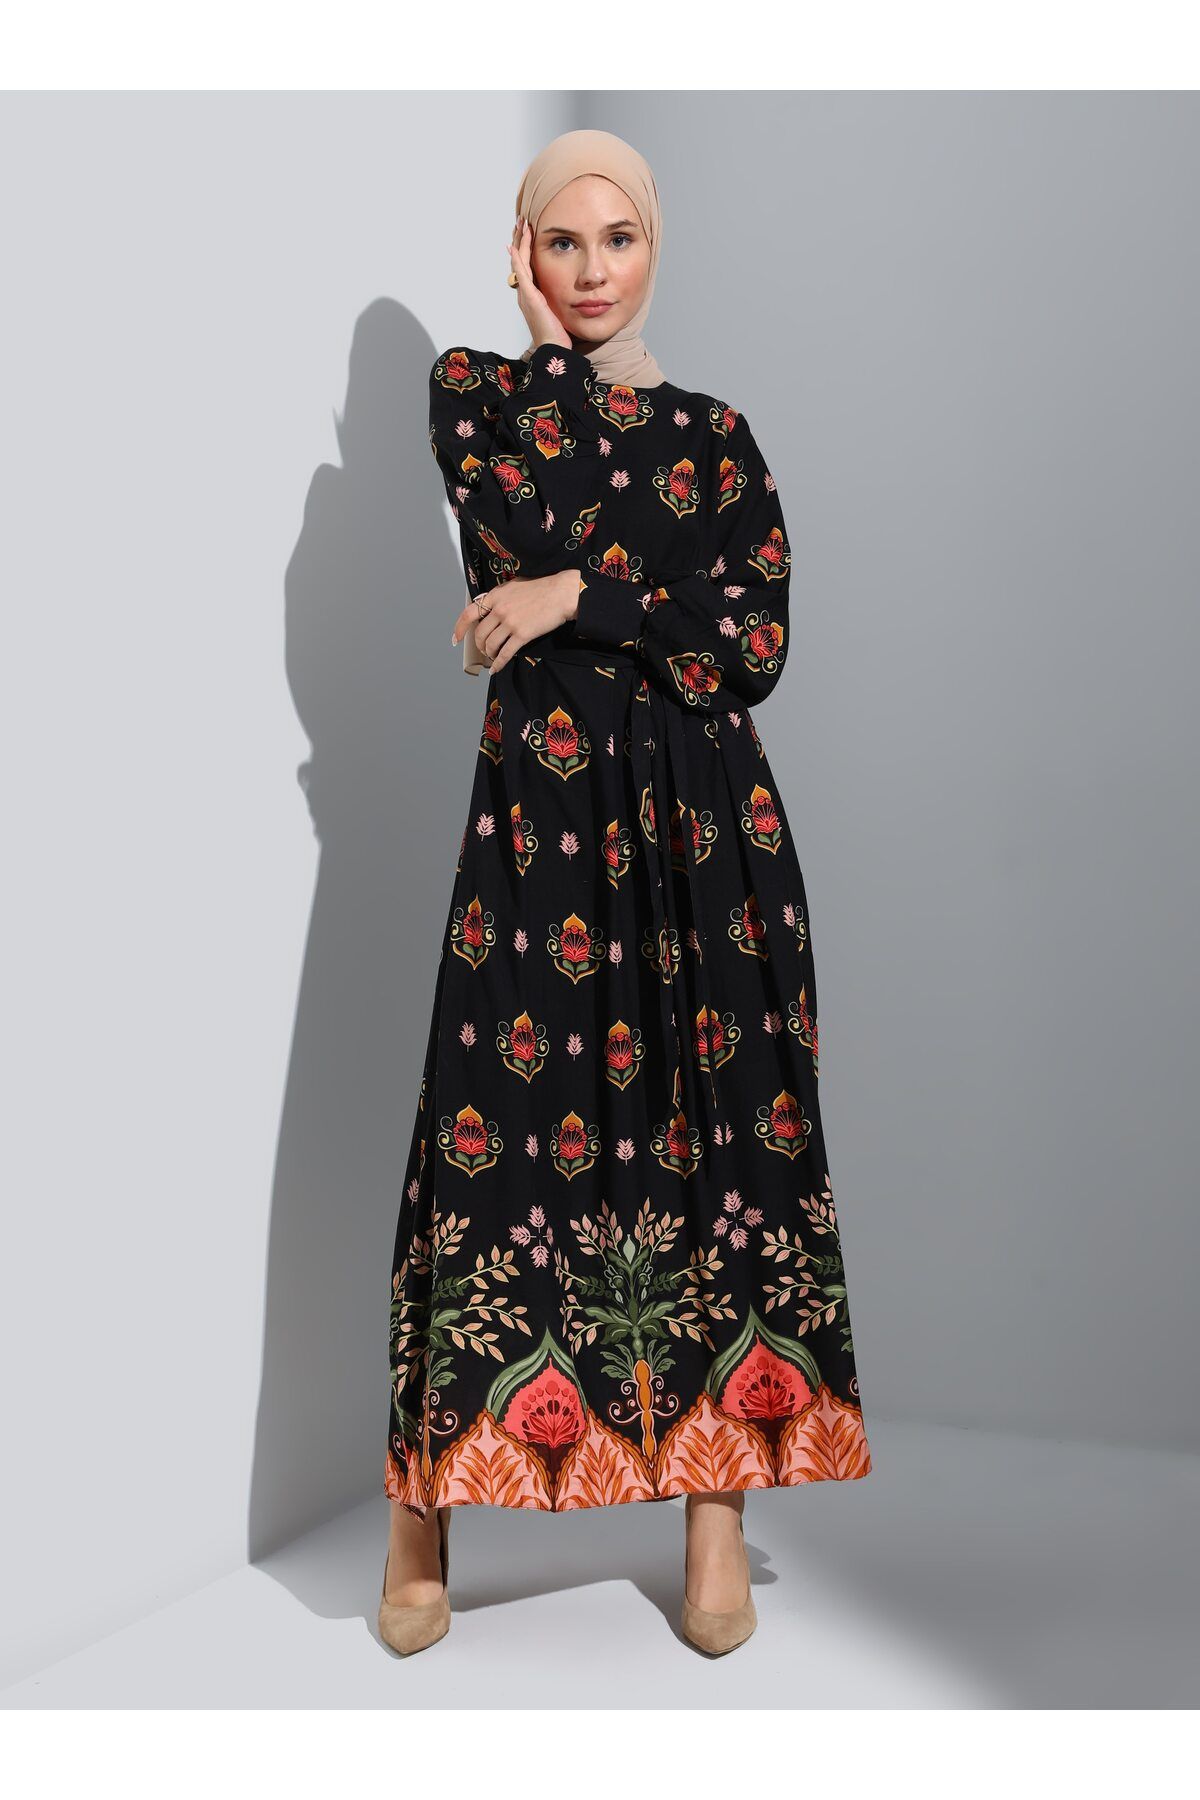 Refka Doğal Kumaşlı Desenli Tesettür Elbise - Siyah Mercan Çiçek Desenli -